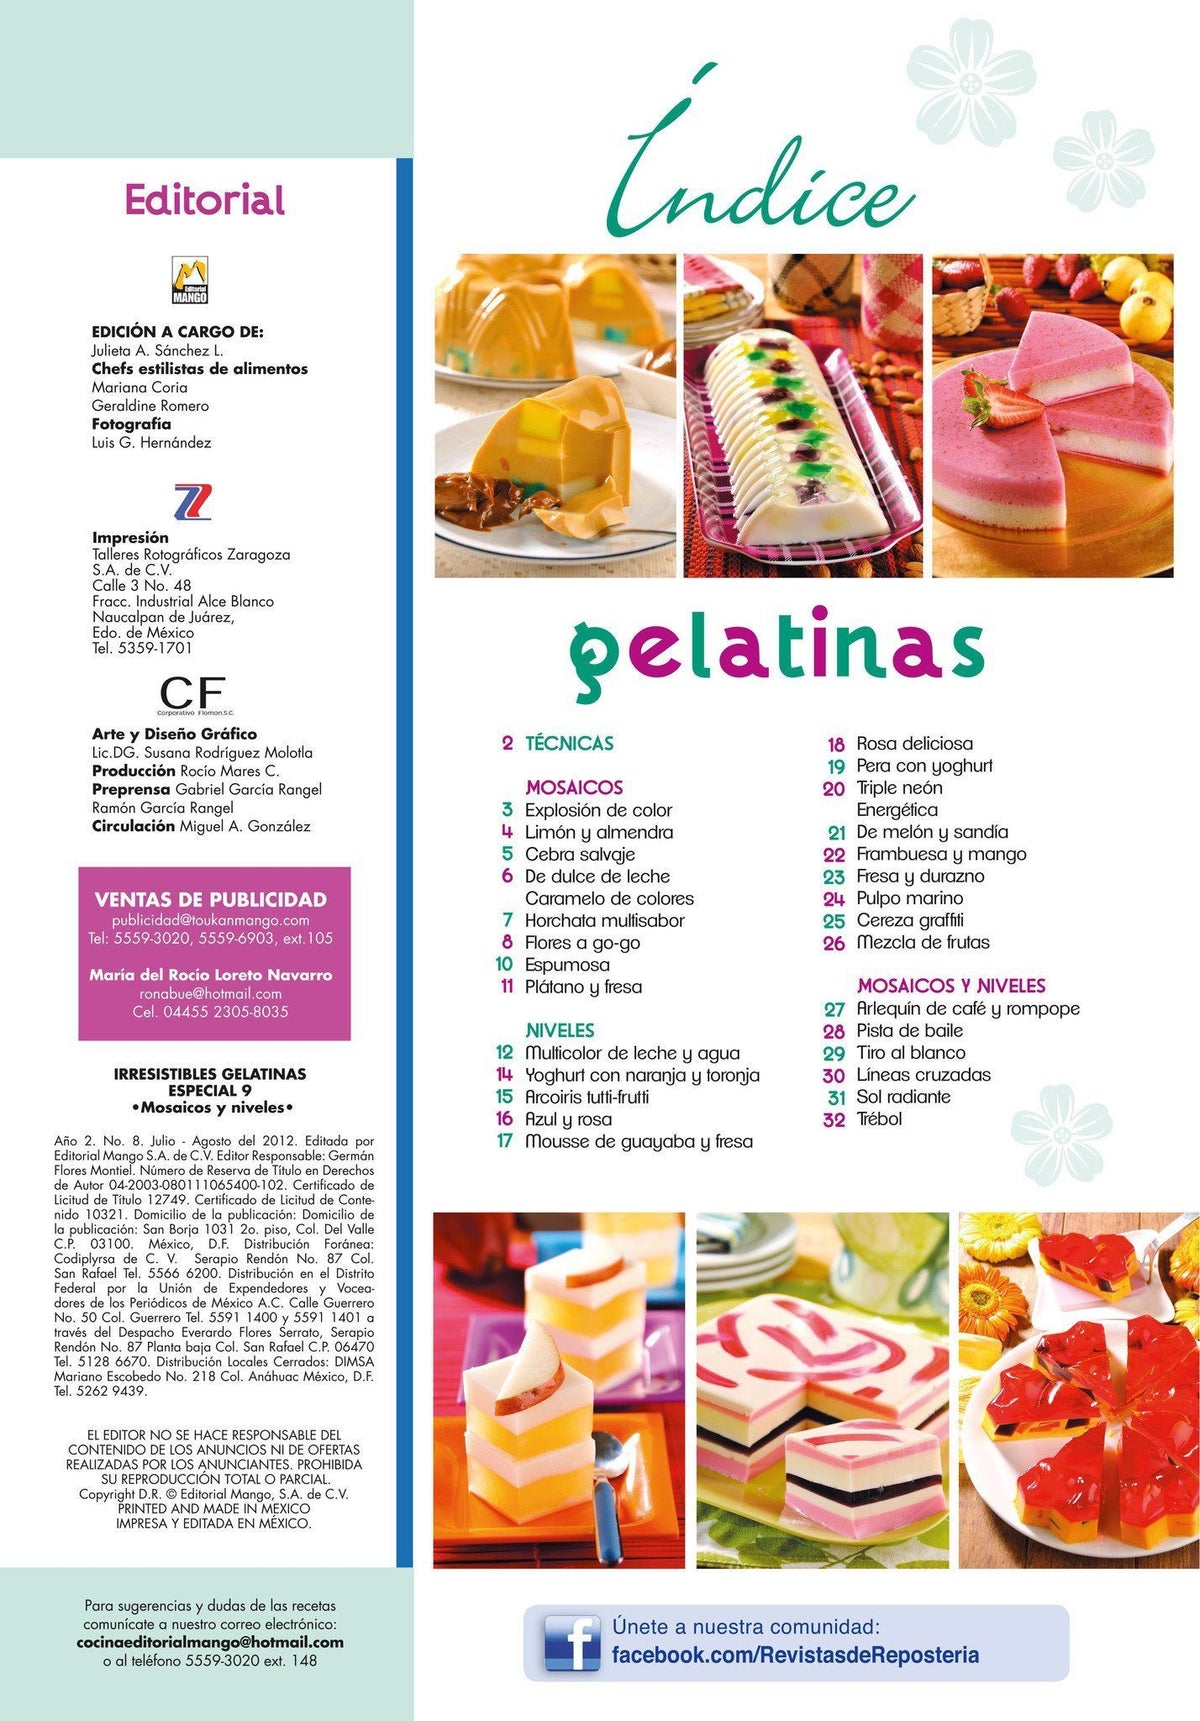 Irresistibles Gelatinas Especial No. 9 - Mosaicos y niveles - Formato Digital - ToukanMango